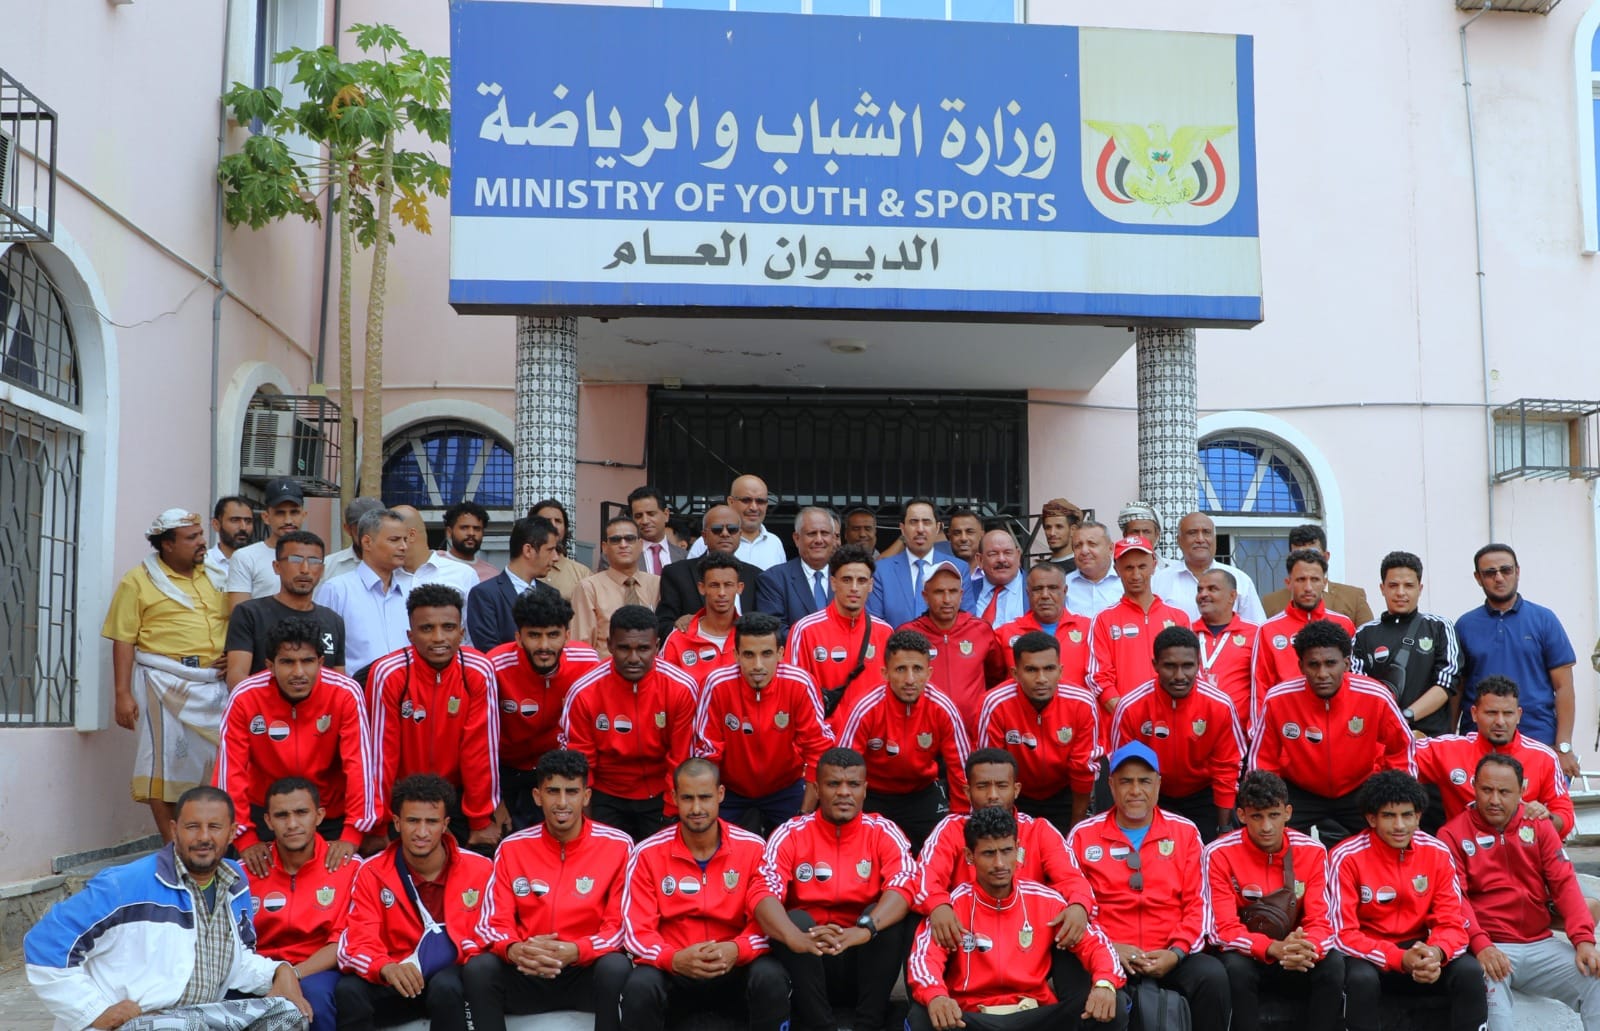 البكري يكرّم فريق فحمان المتأهل إلى الدور الأول من بطولة كأس الأندية العربية